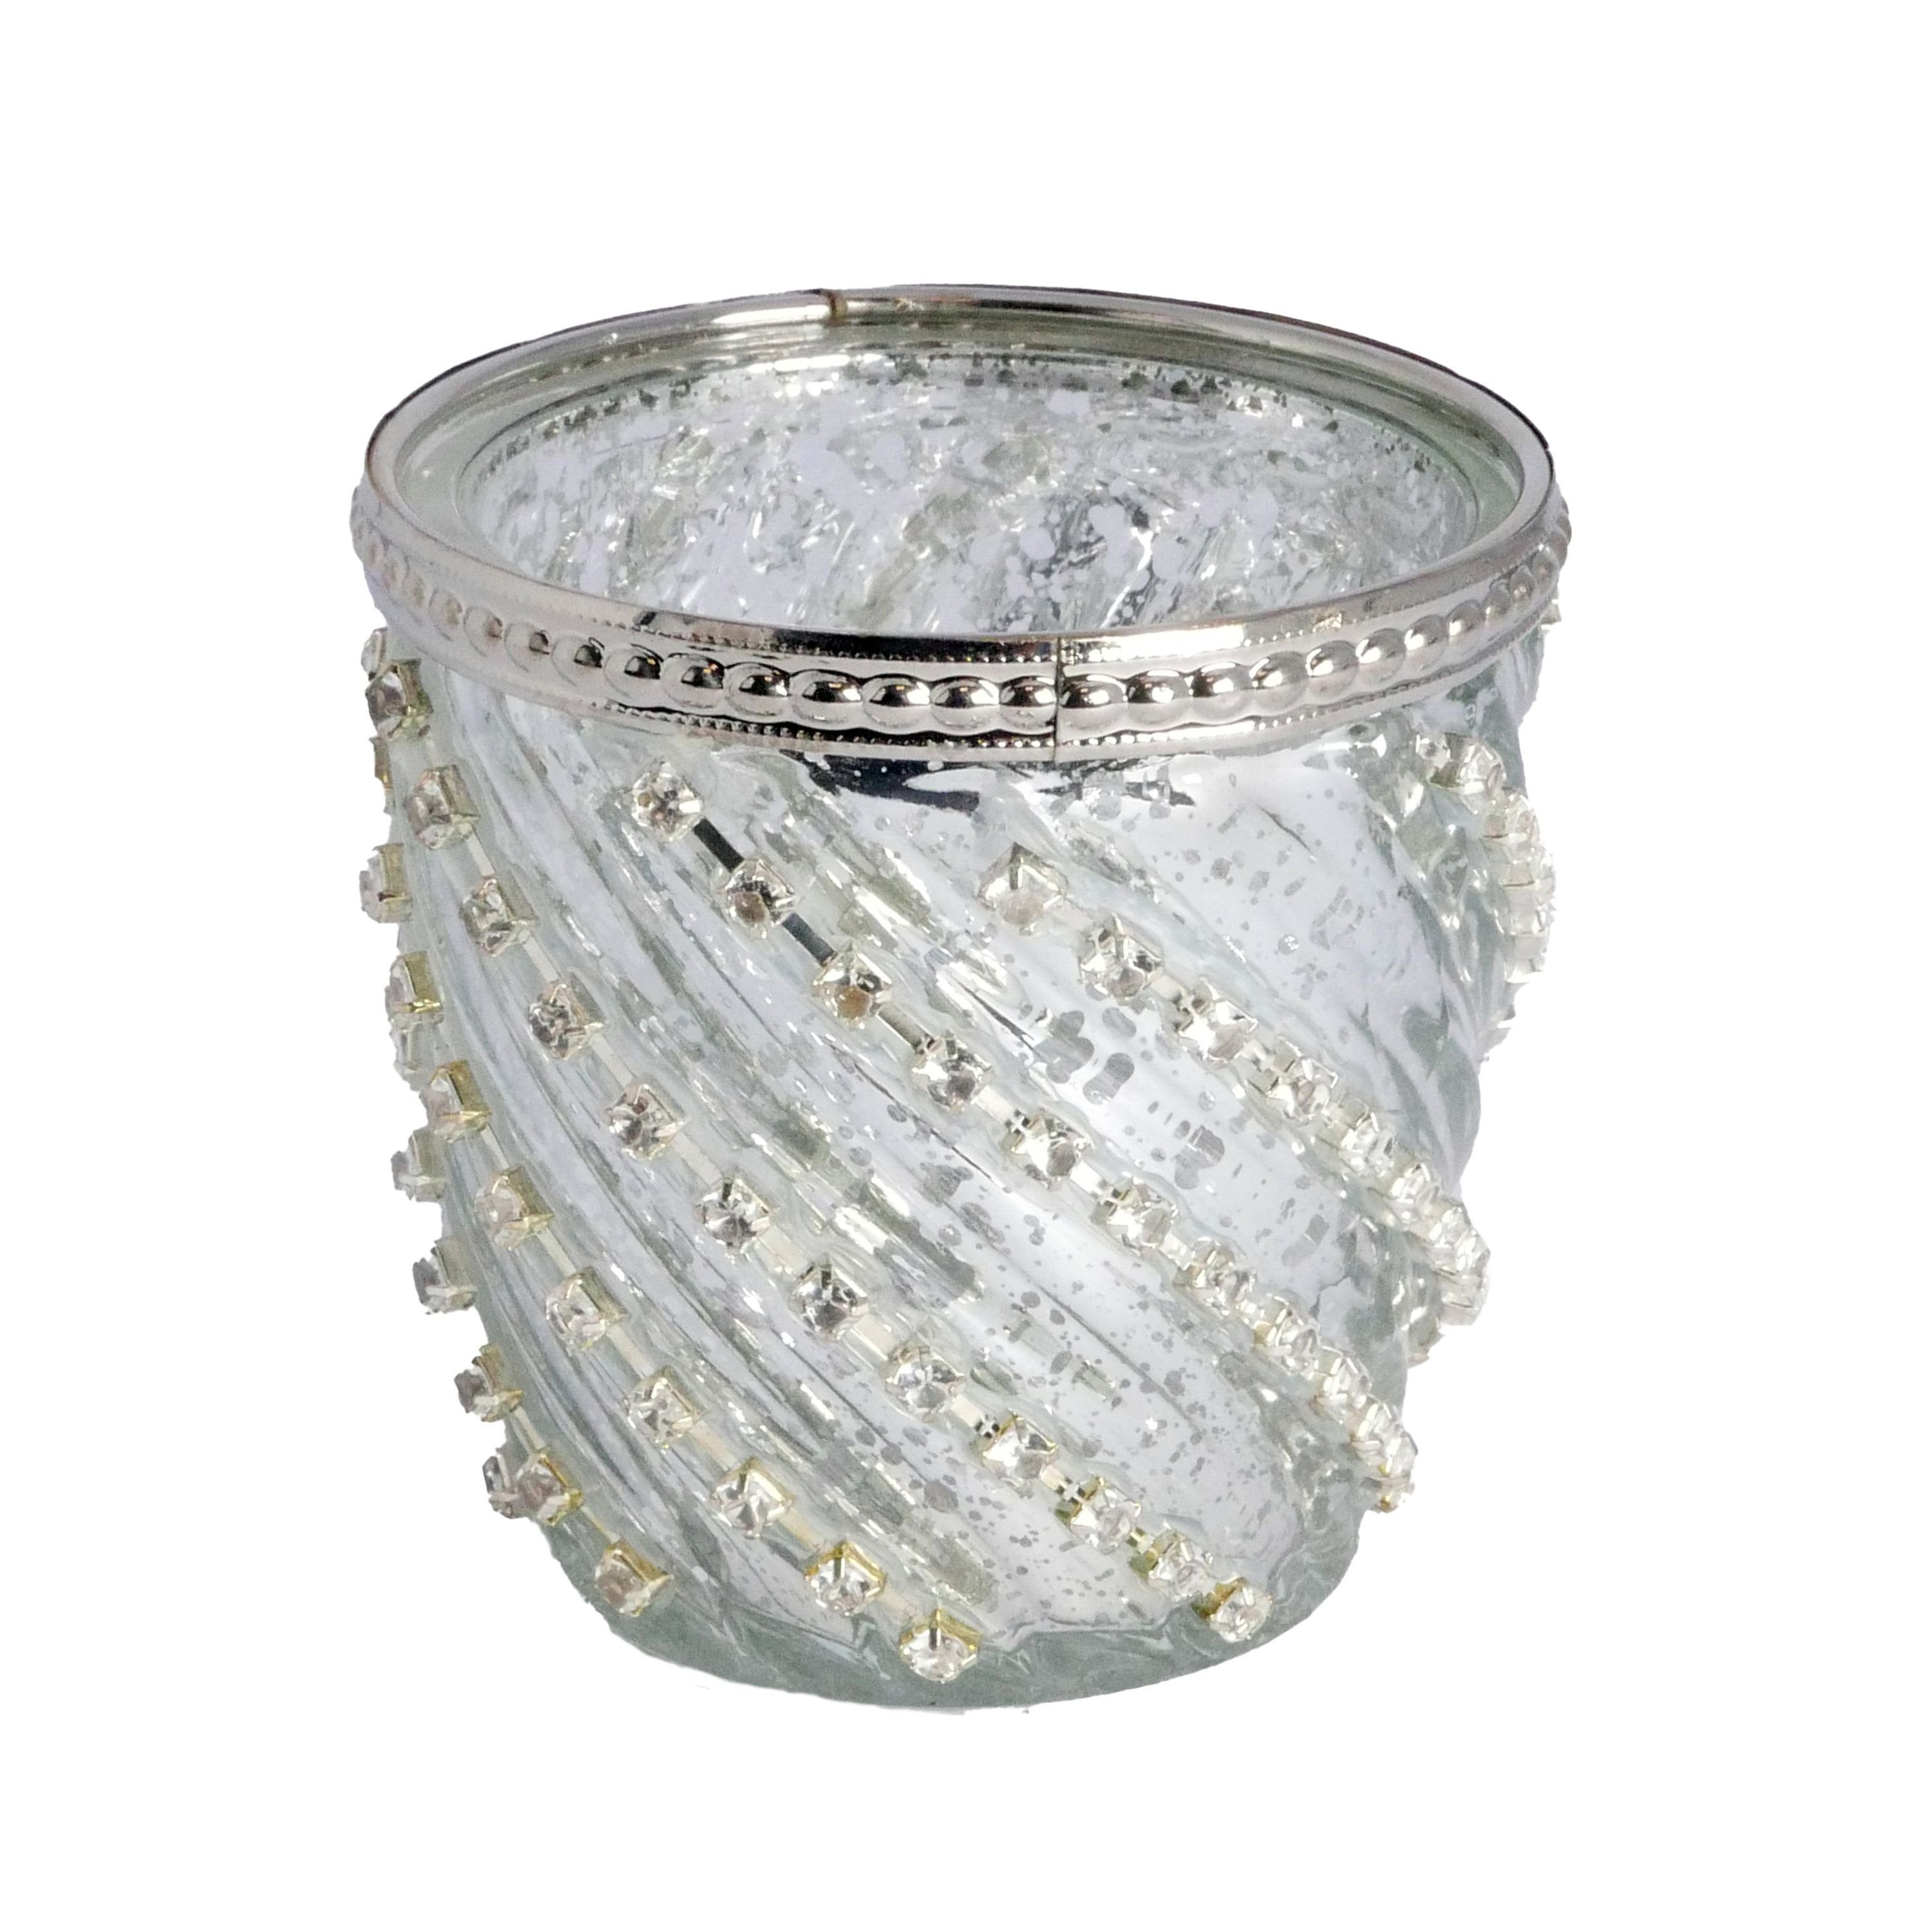 B&S Windlicht Teelichtglas silber Zierrand Metall